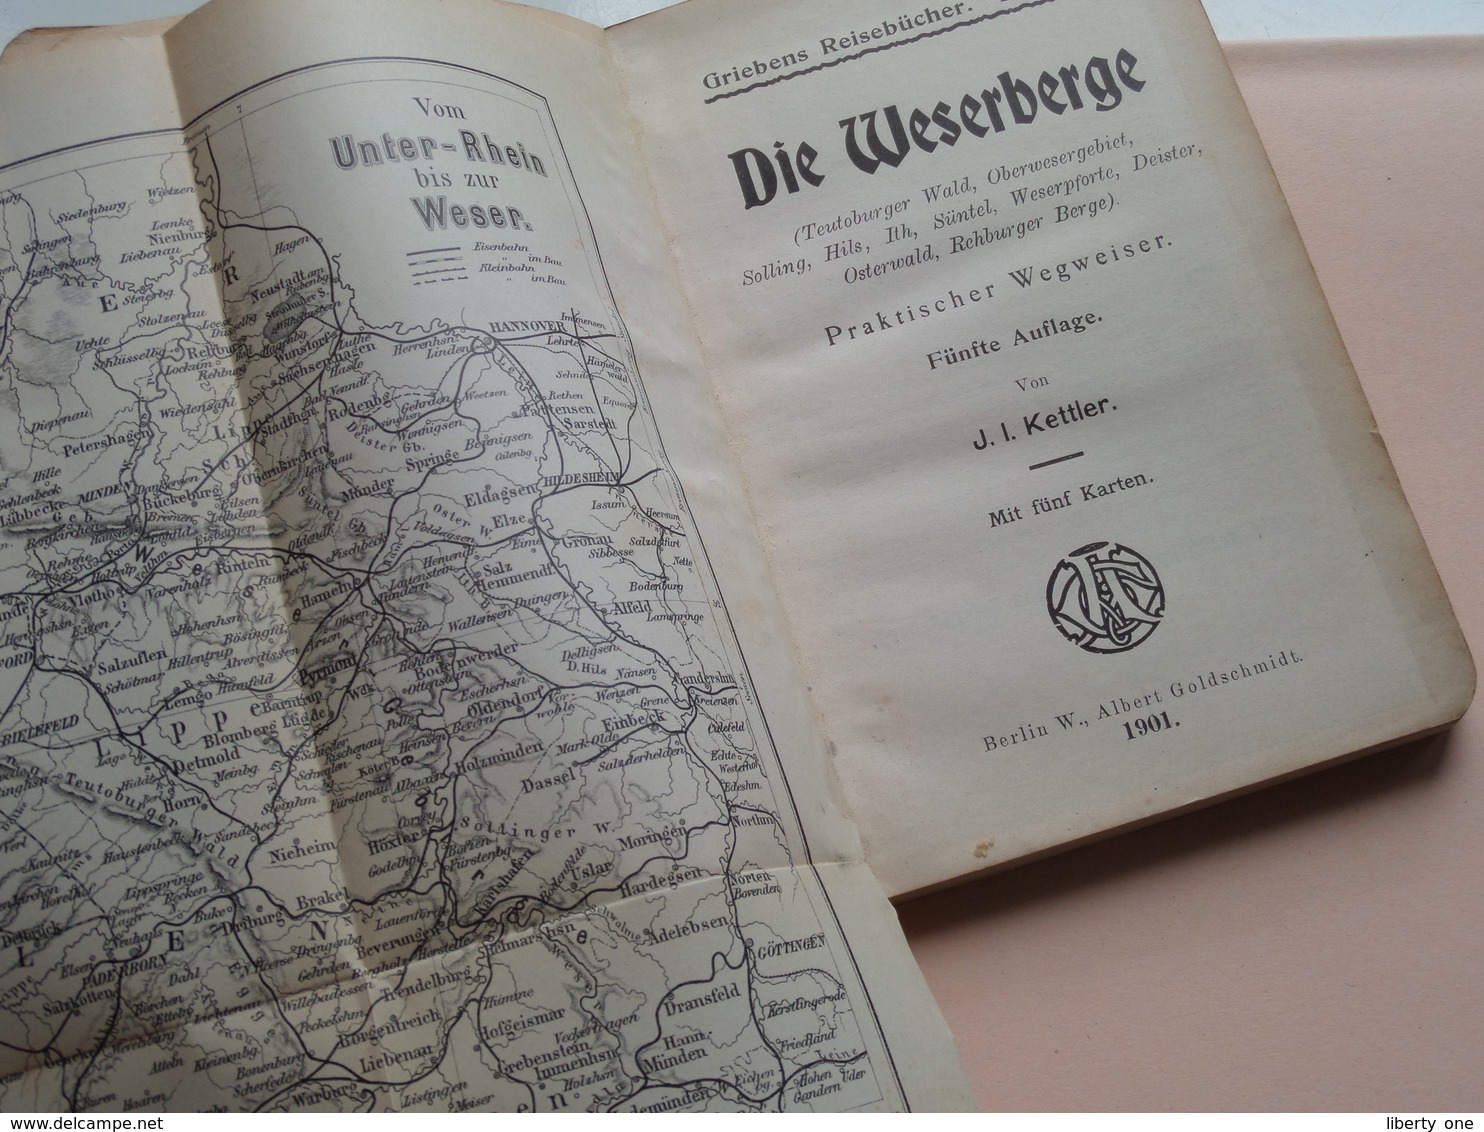 Griebens Reisebücher Band 45 - Die WESERBERGE ( Teutoburger ) Druk. A Seydel ( 168 + Funf Karte ) Auflage Funf - 1901 ! - Nordrhein-Westfalen